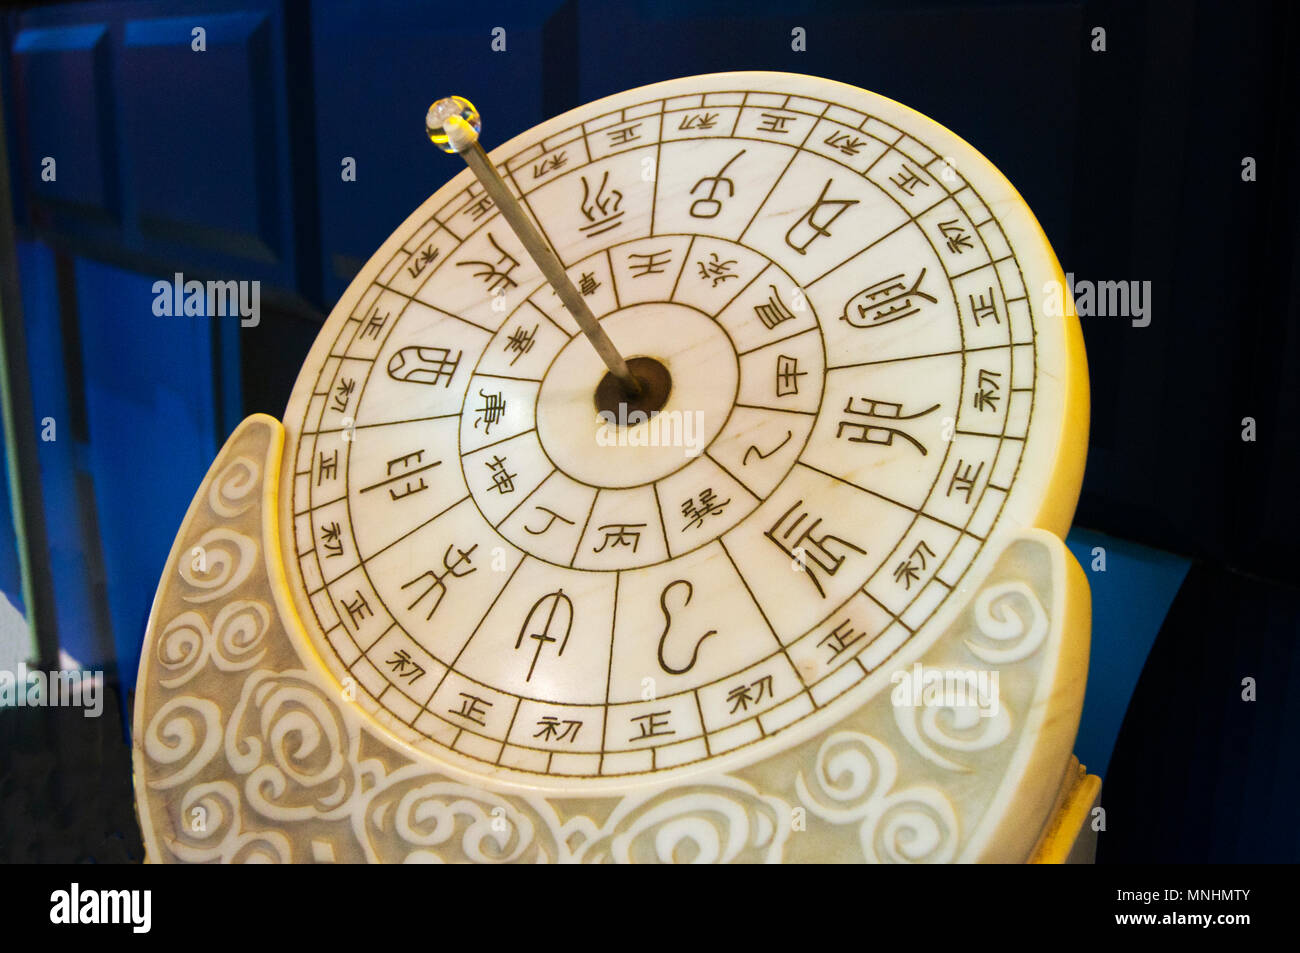 Un ancien cadran solaire chinois exposé au Musée des sciences et de la technologie de la Chine à Beijing, Chine. Banque D'Images